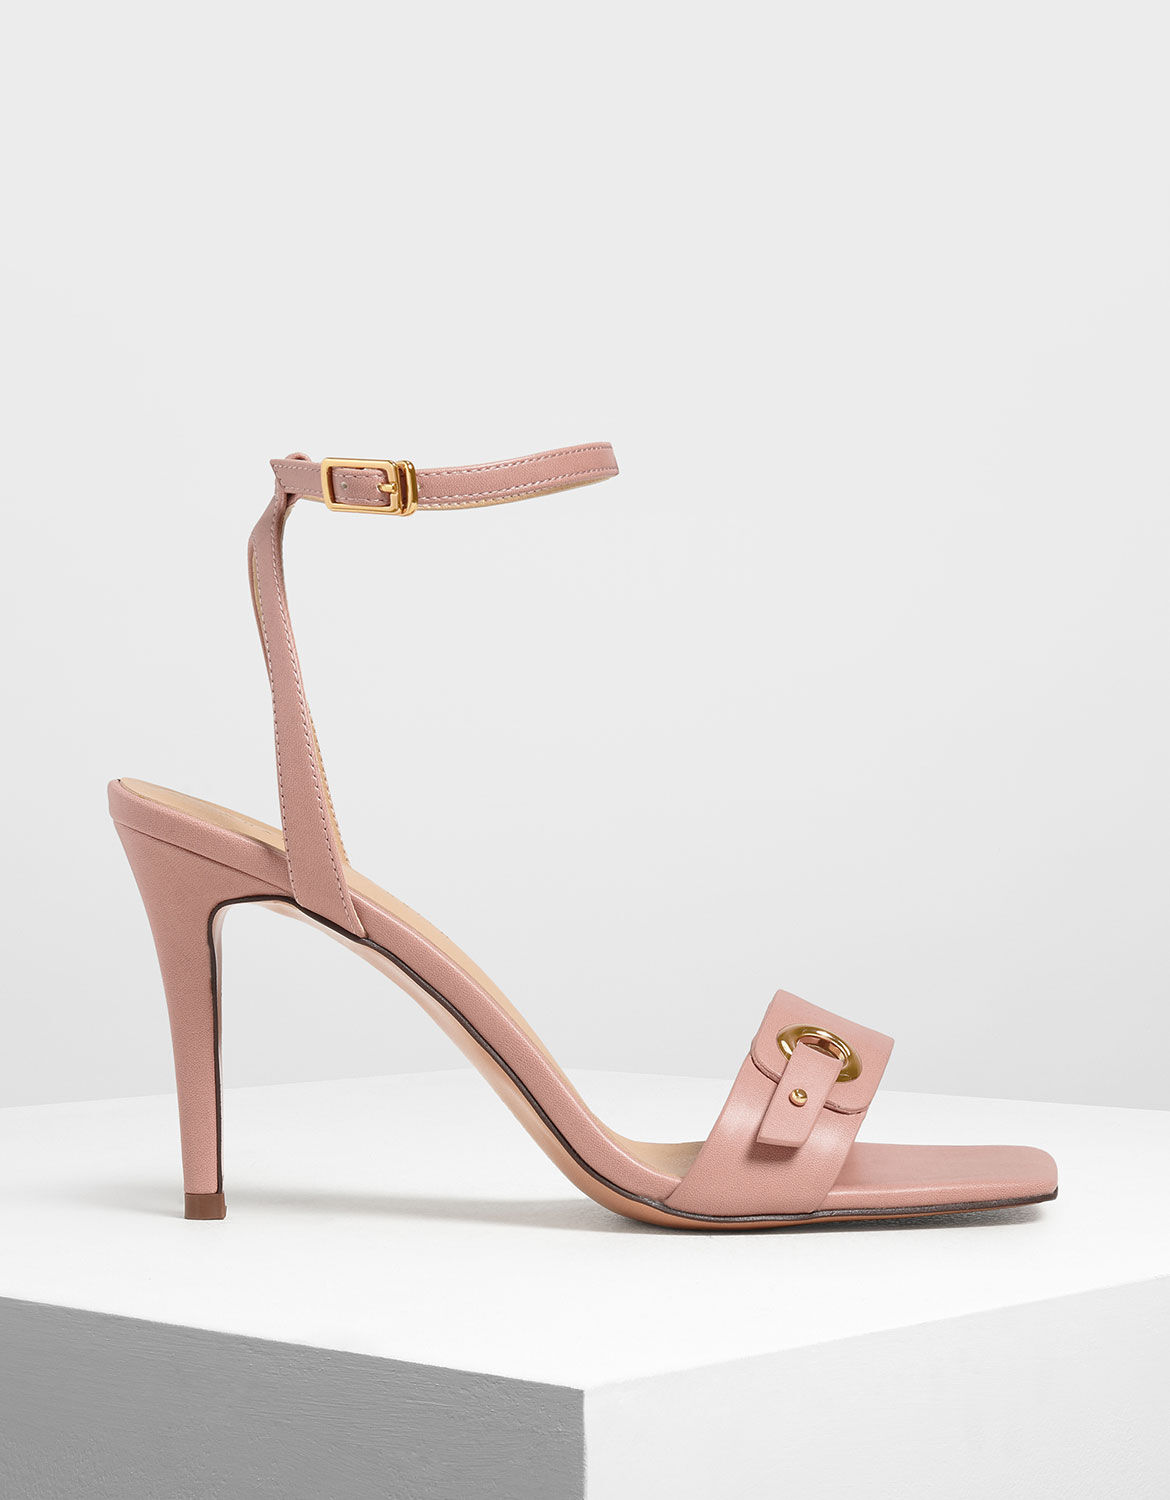 blush pink stiletto heels